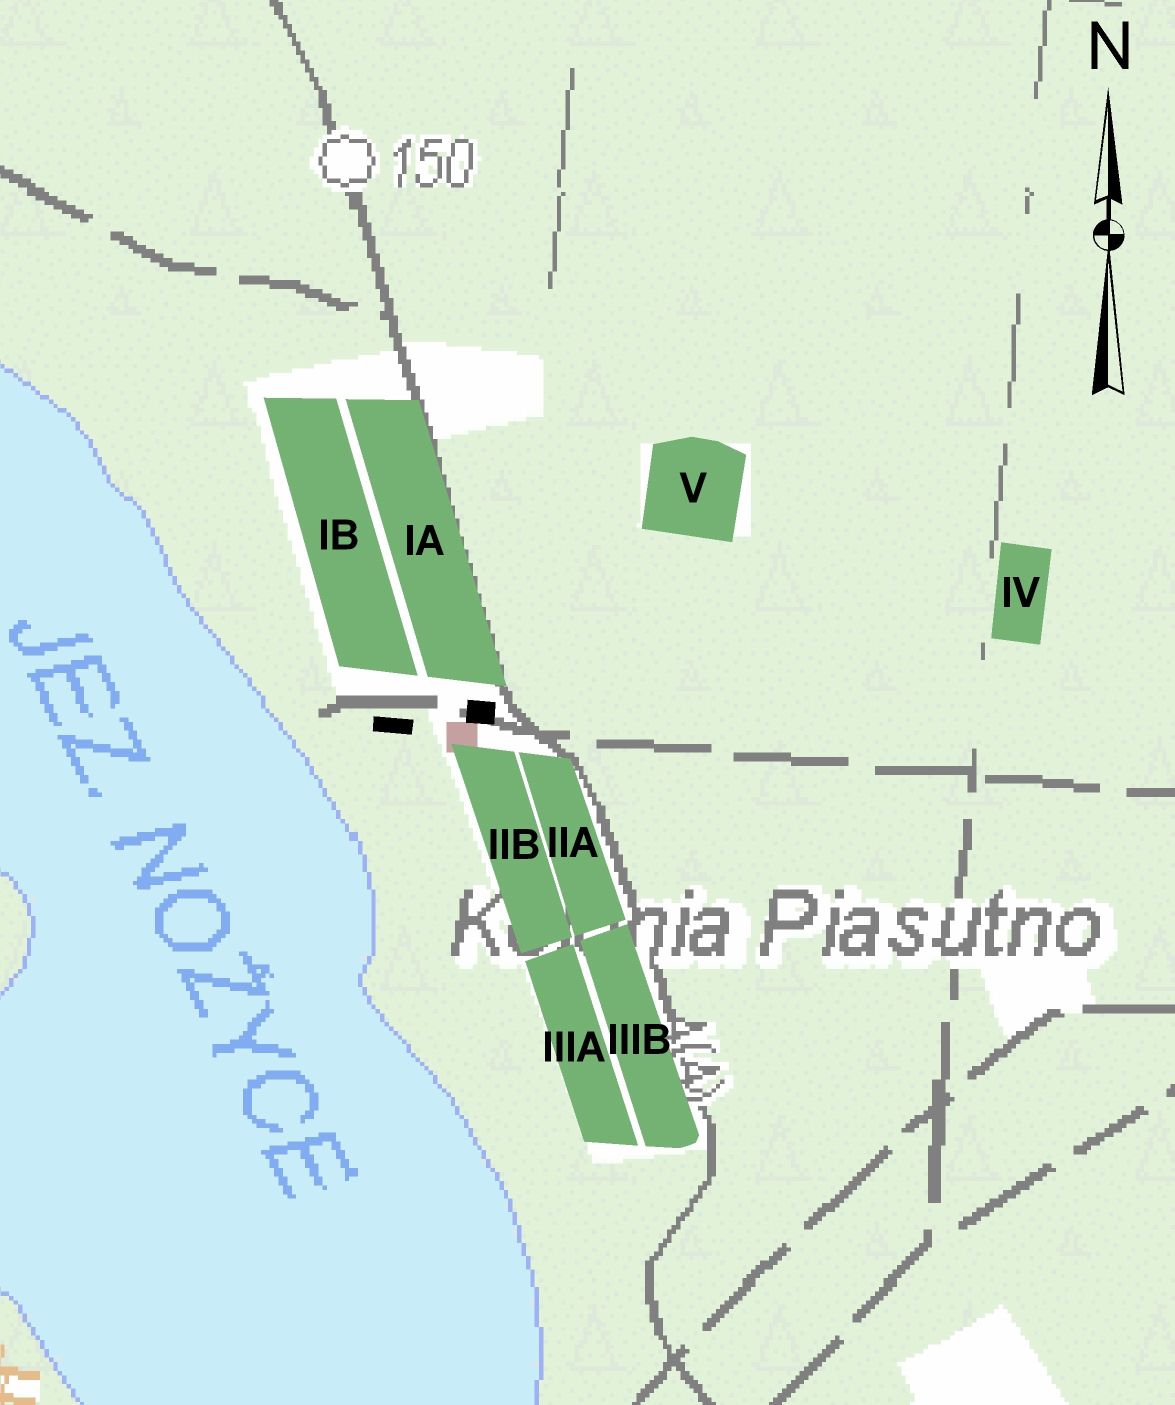 Lokalizacja i rozmieszczenie kwater szkółki Piasutno